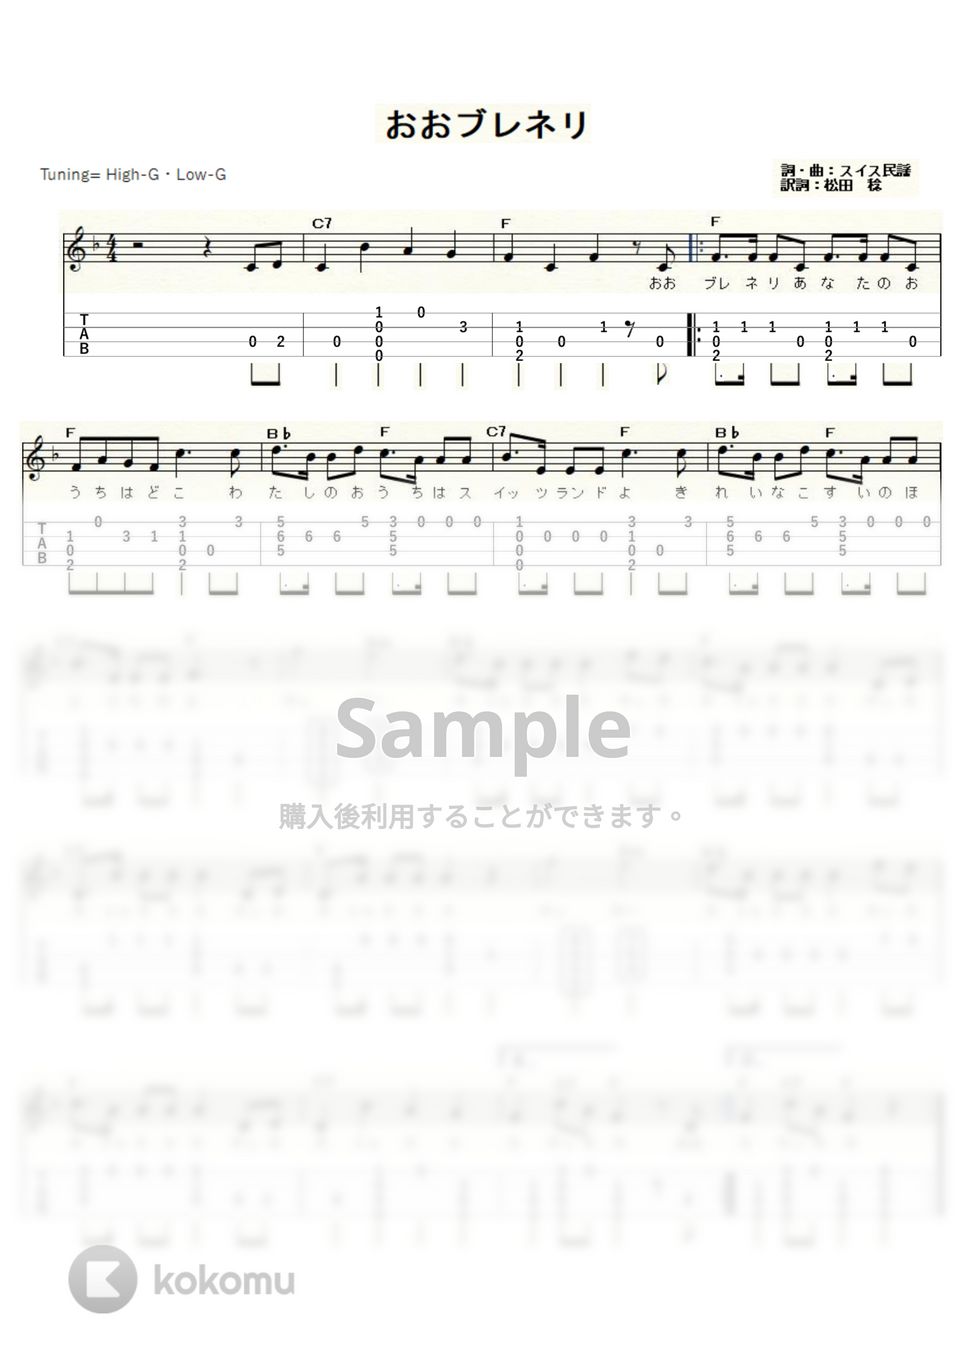 おおブレネリ (ｳｸﾚﾚｿﾛ / High-G・Low-G / 初級～中級) by ukulelepapa